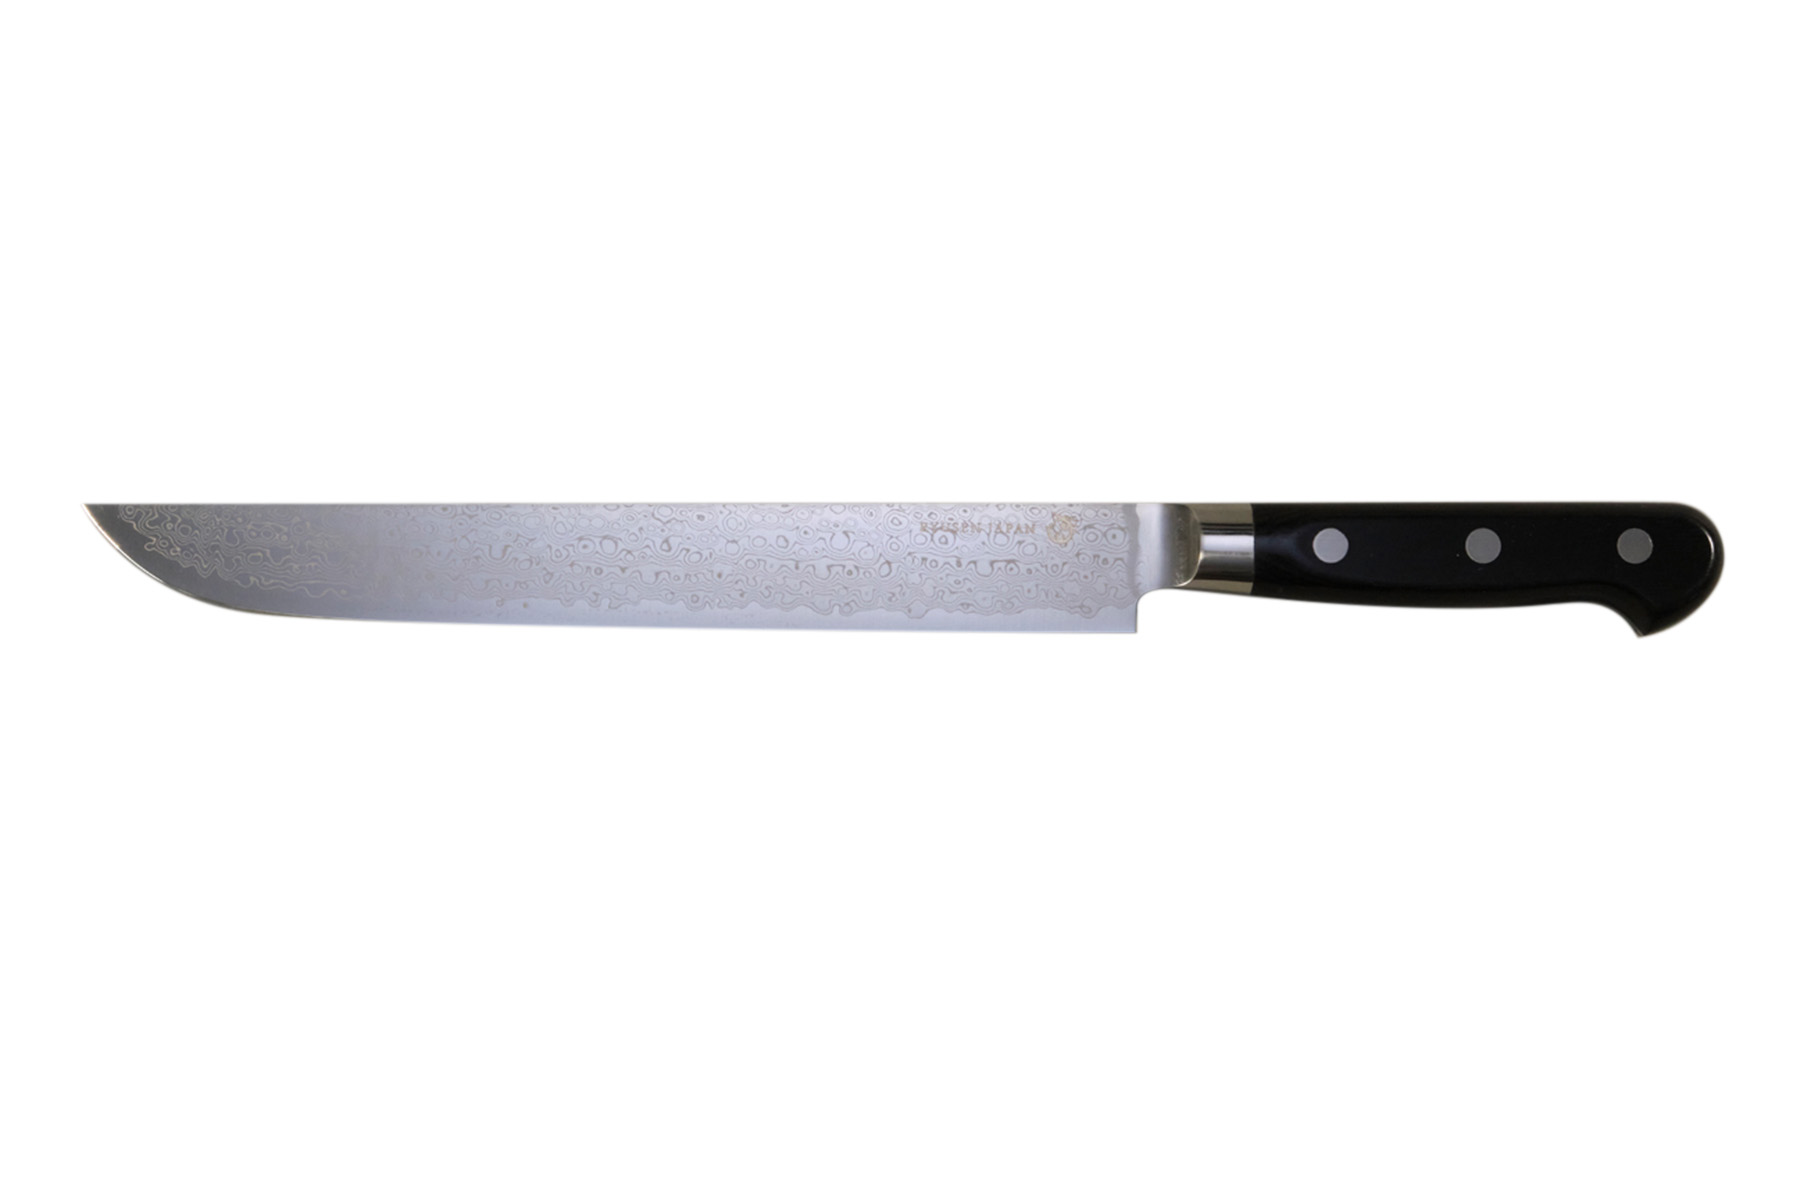 Couteau japonais Ryusen Bonten Unryu - Couteau trancheur 24 cm